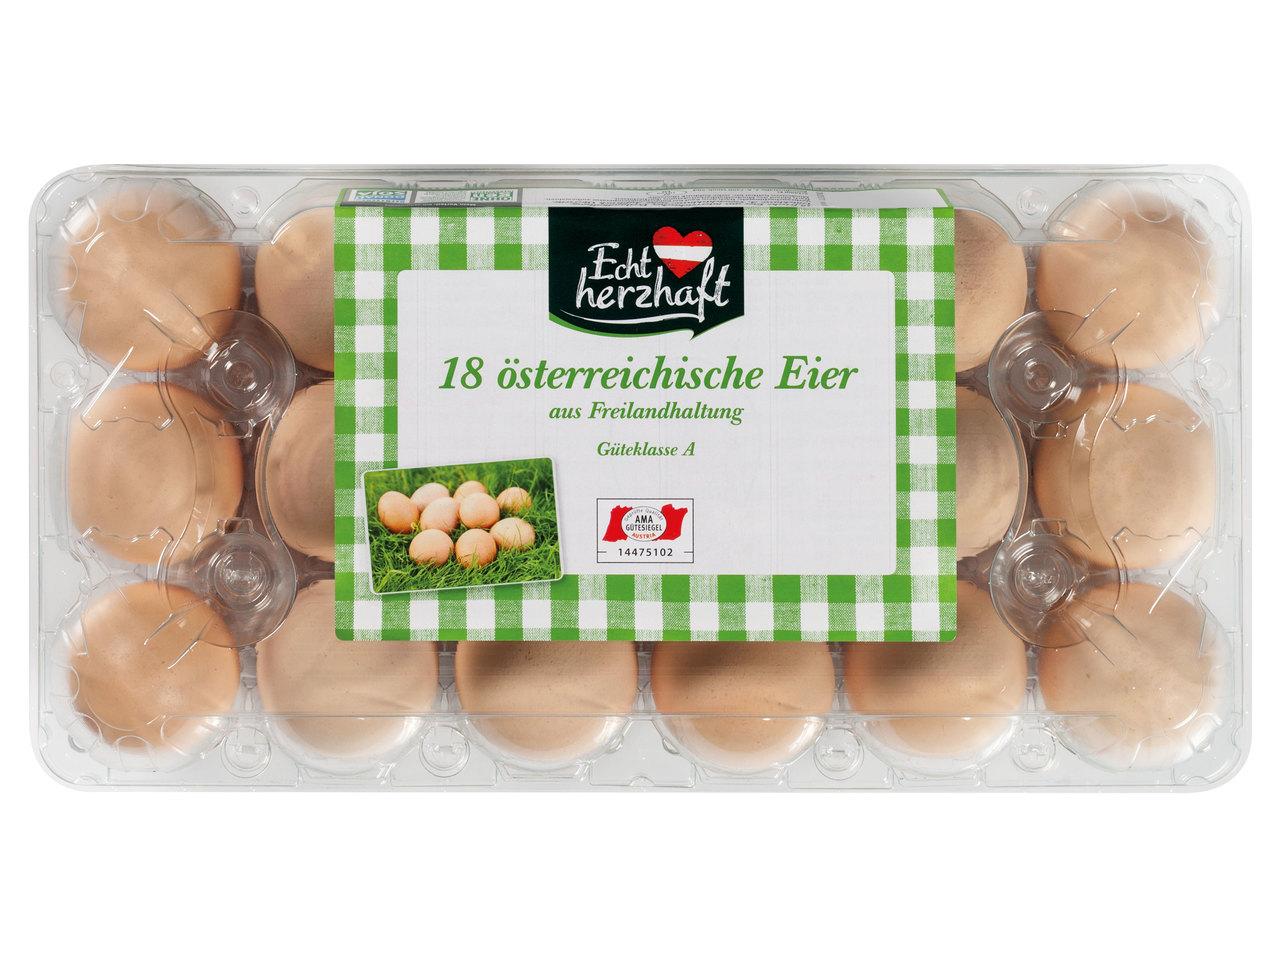 ECHT HERZHAFT 18 österreichische Eier aus Freilandhaltung